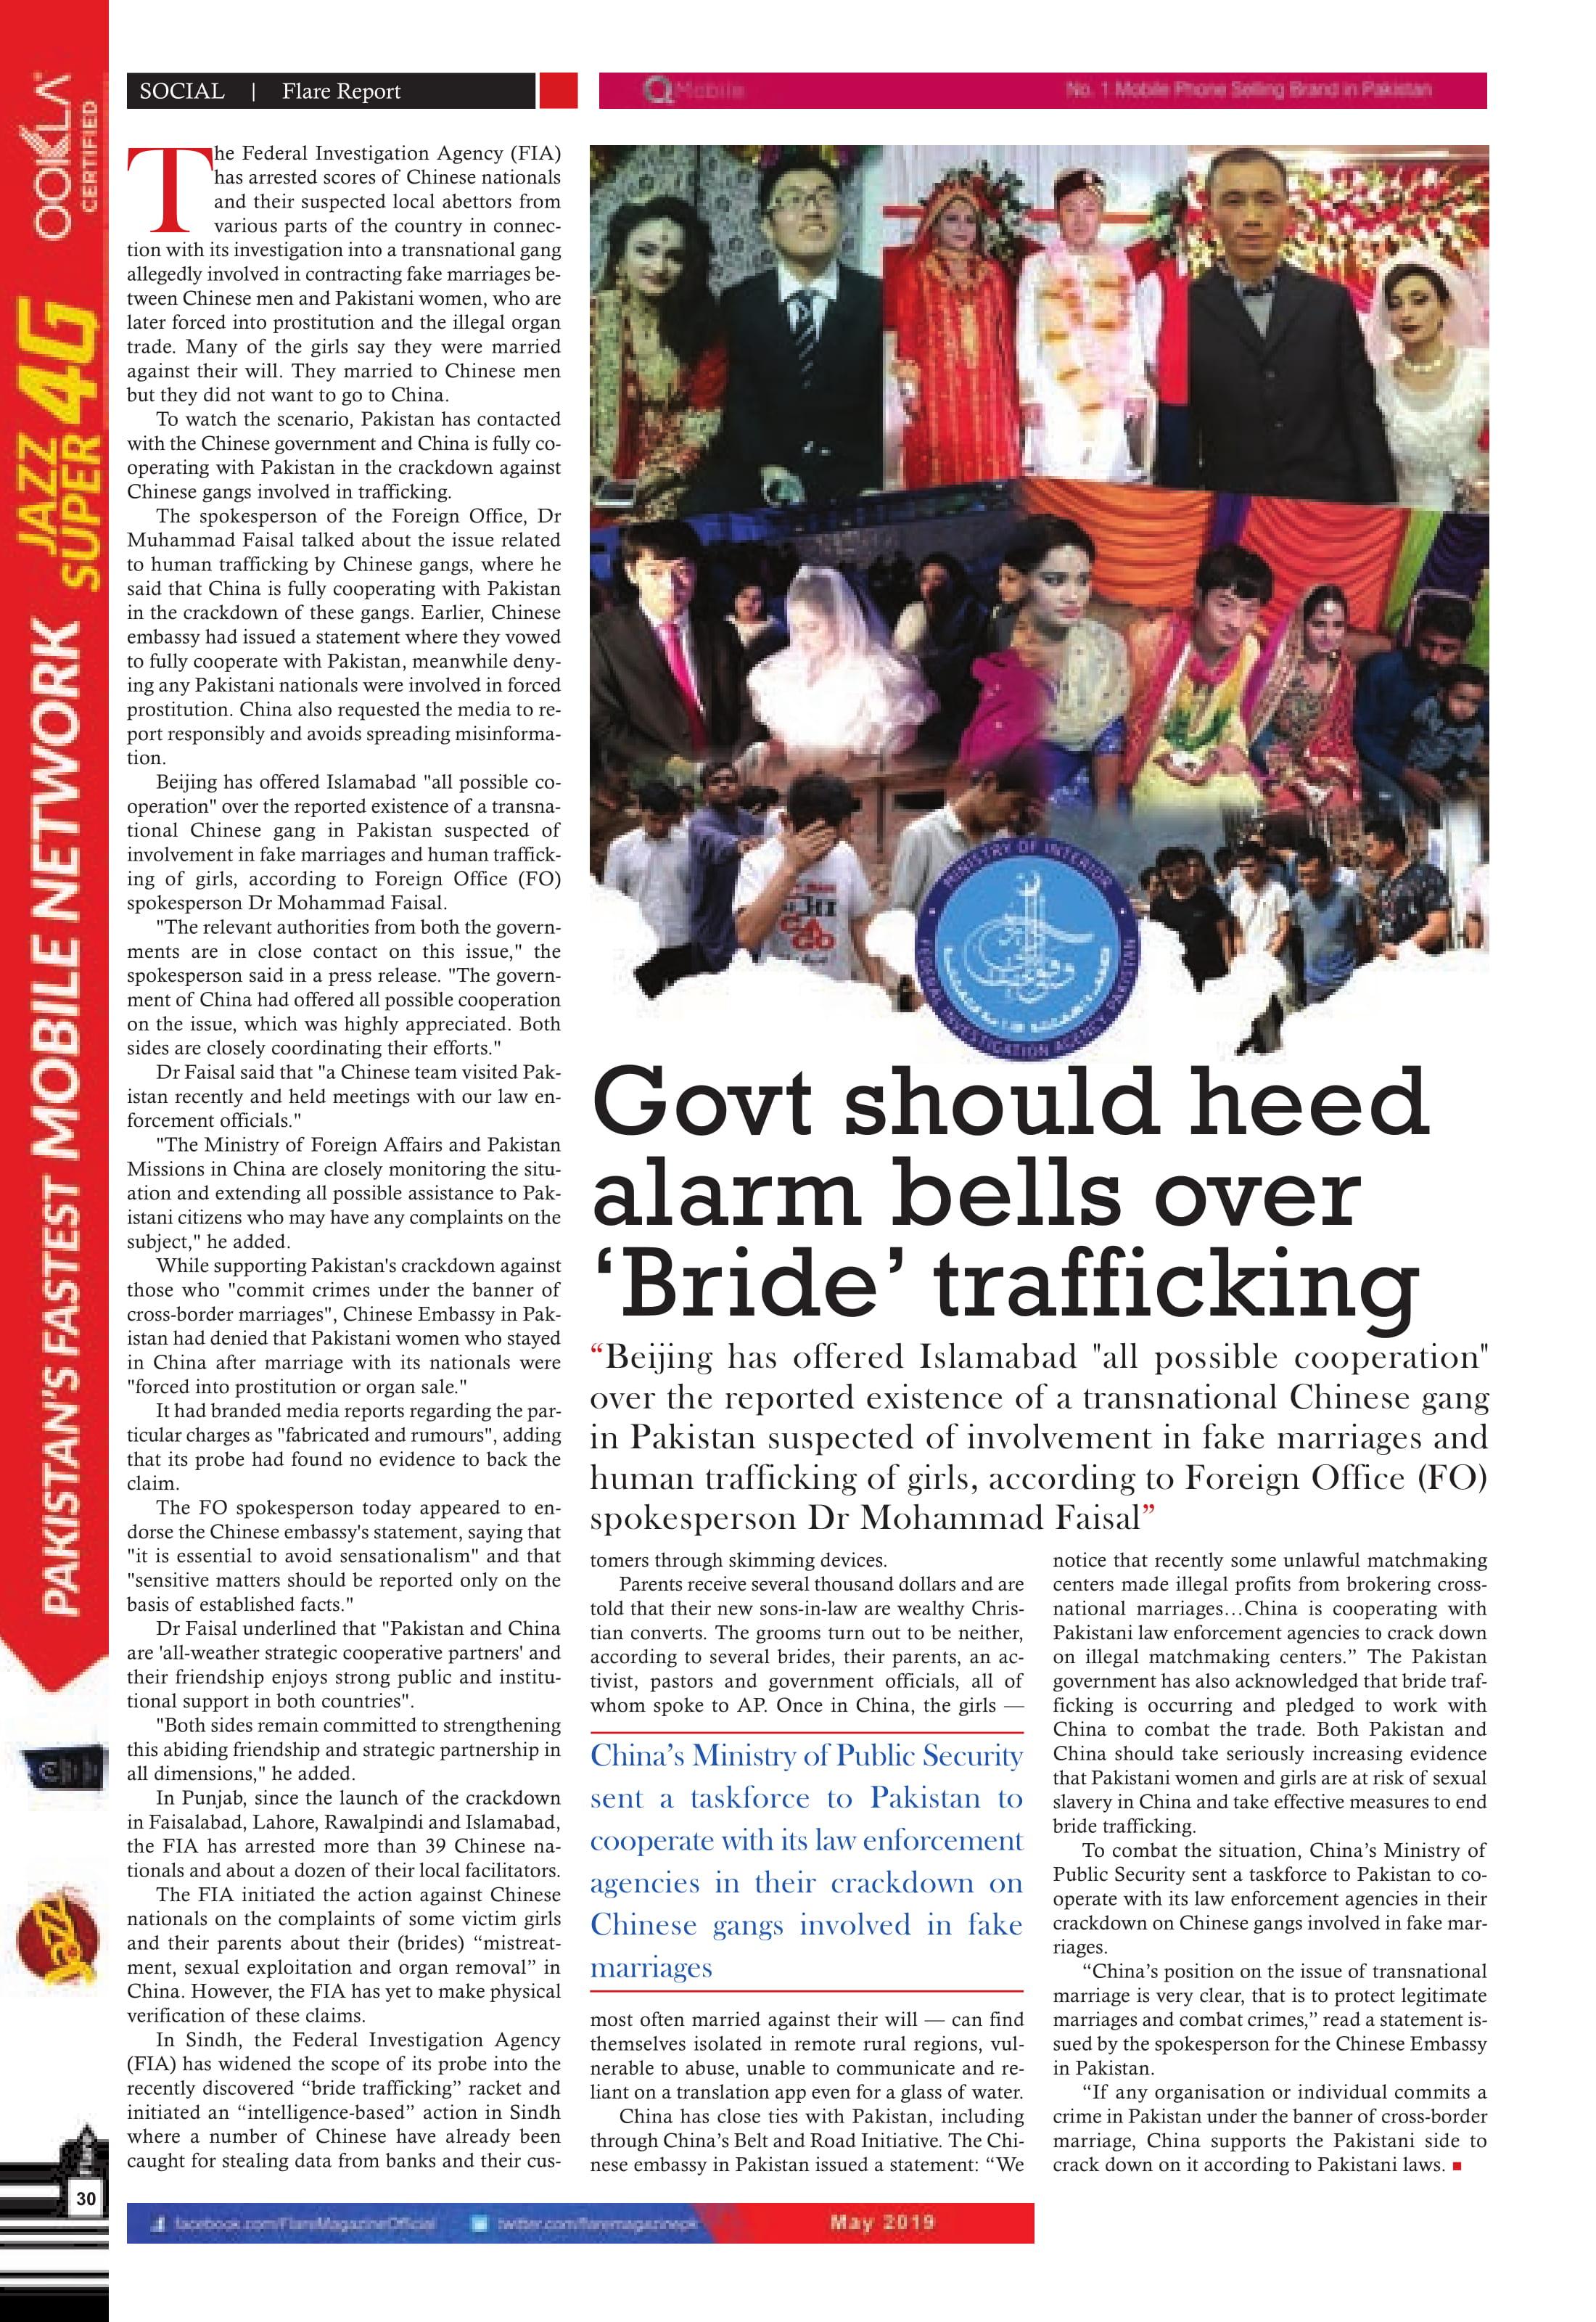 Govt should heed alarm bells over ‘Bride’ trafficking